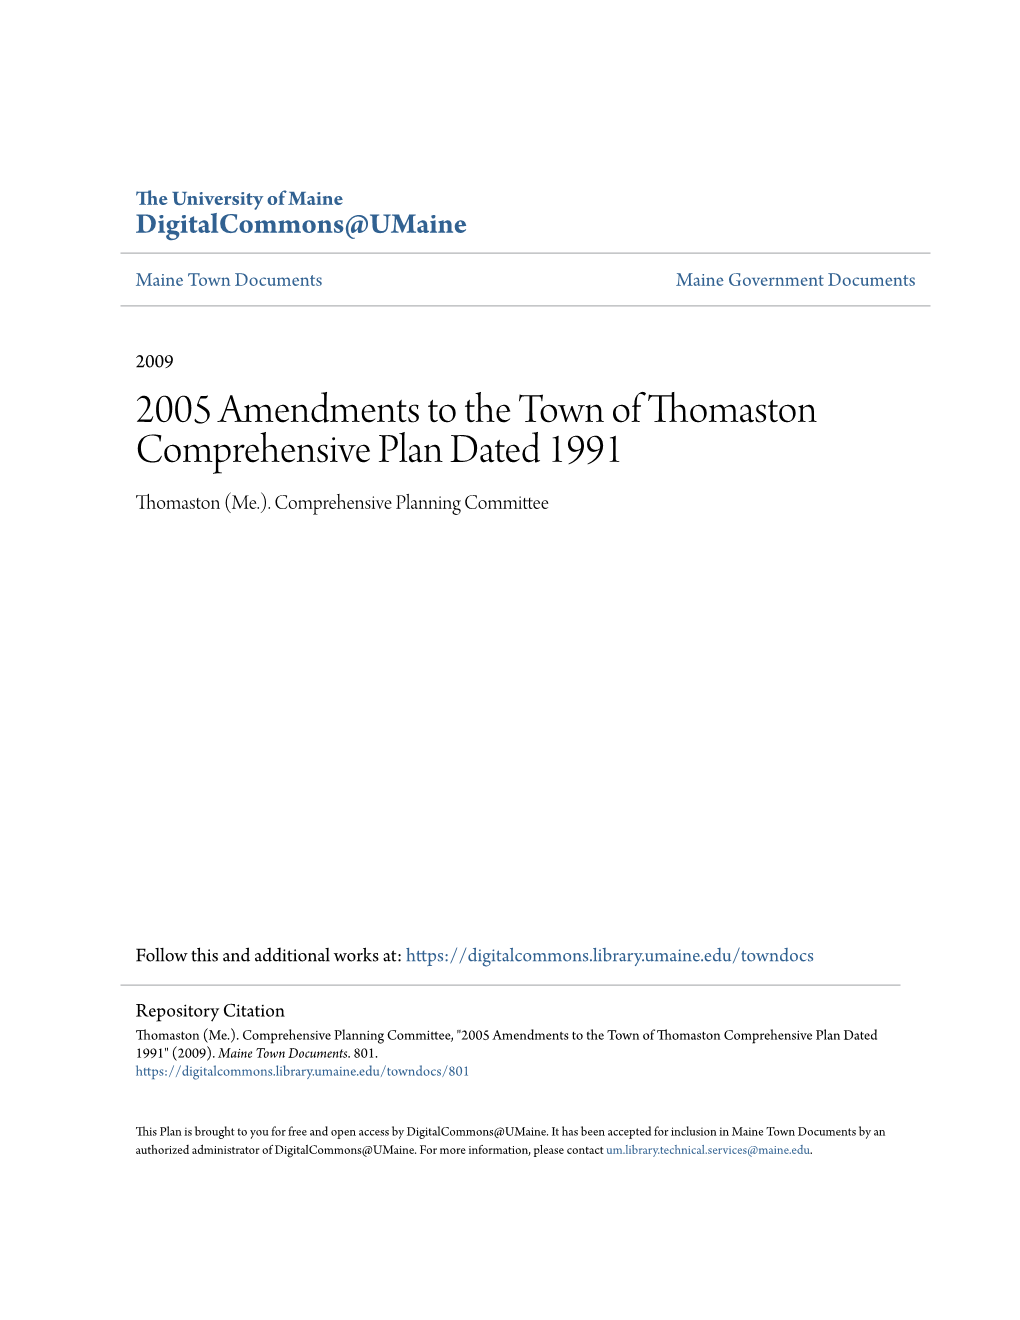 2005 Amendments to the Town of Thomaston Comprehensive Plan Dated 1991 Thomaston (Me.)